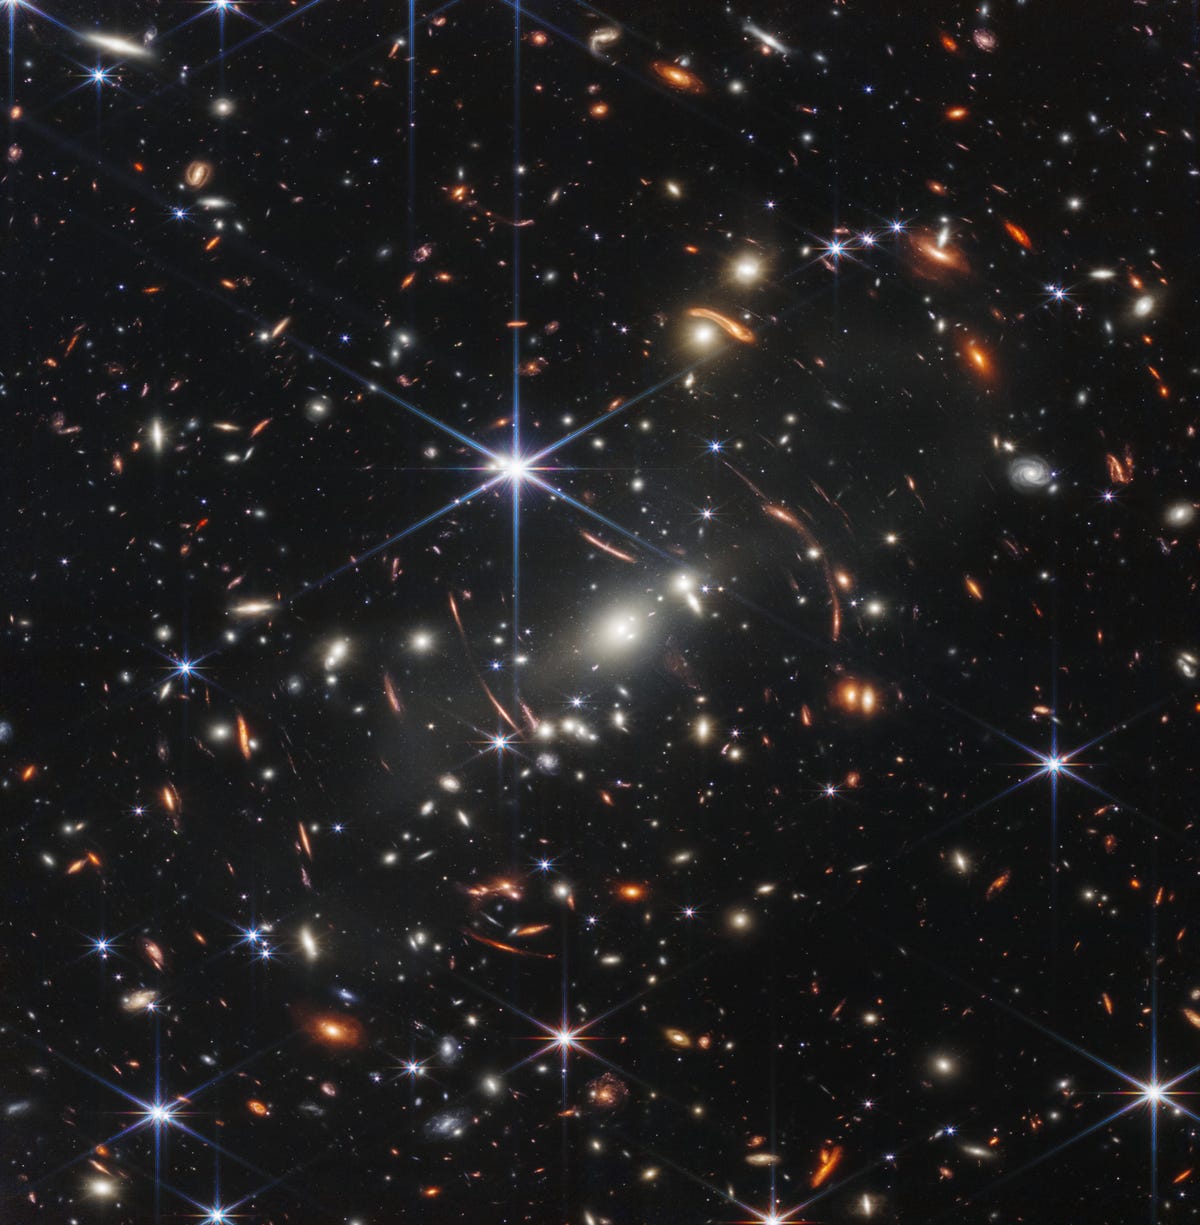 Un câmp de mii de galaxii împotriva întunericului spațiului cu o stea mare centrală albastră cu șase colțuri.